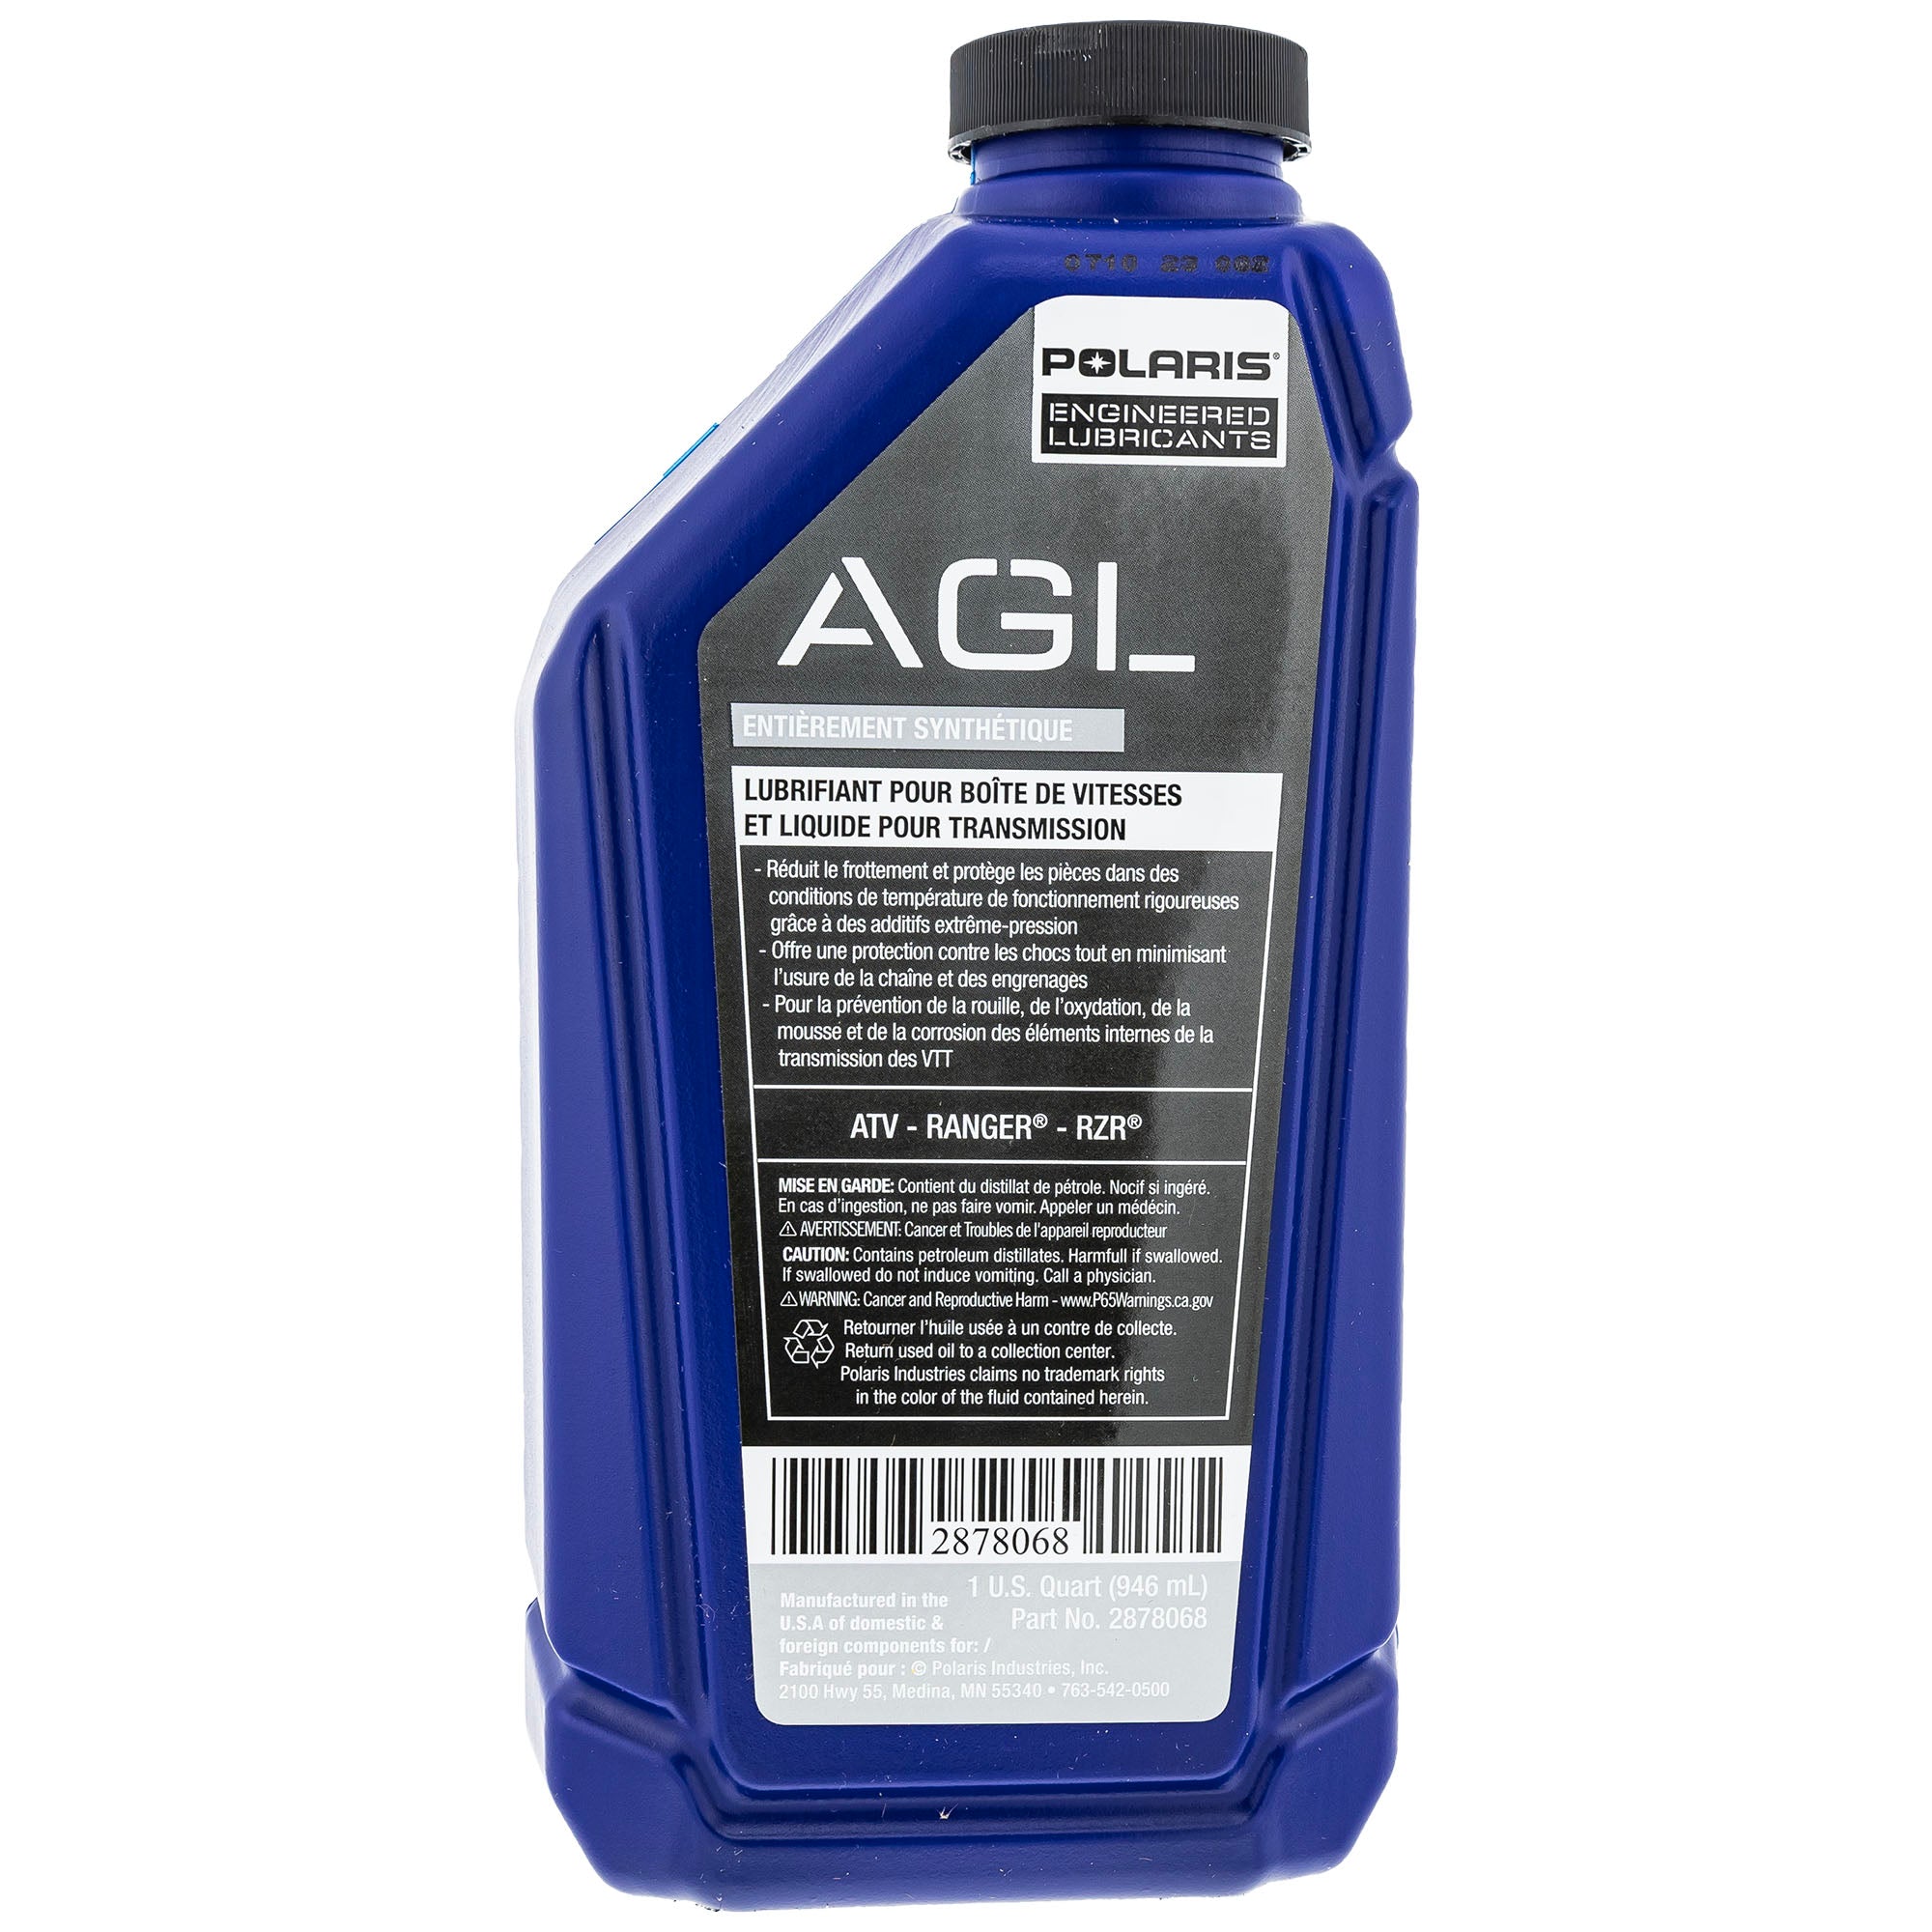 Polaris AGL Gearcase Fluid 1 Quart 2878068